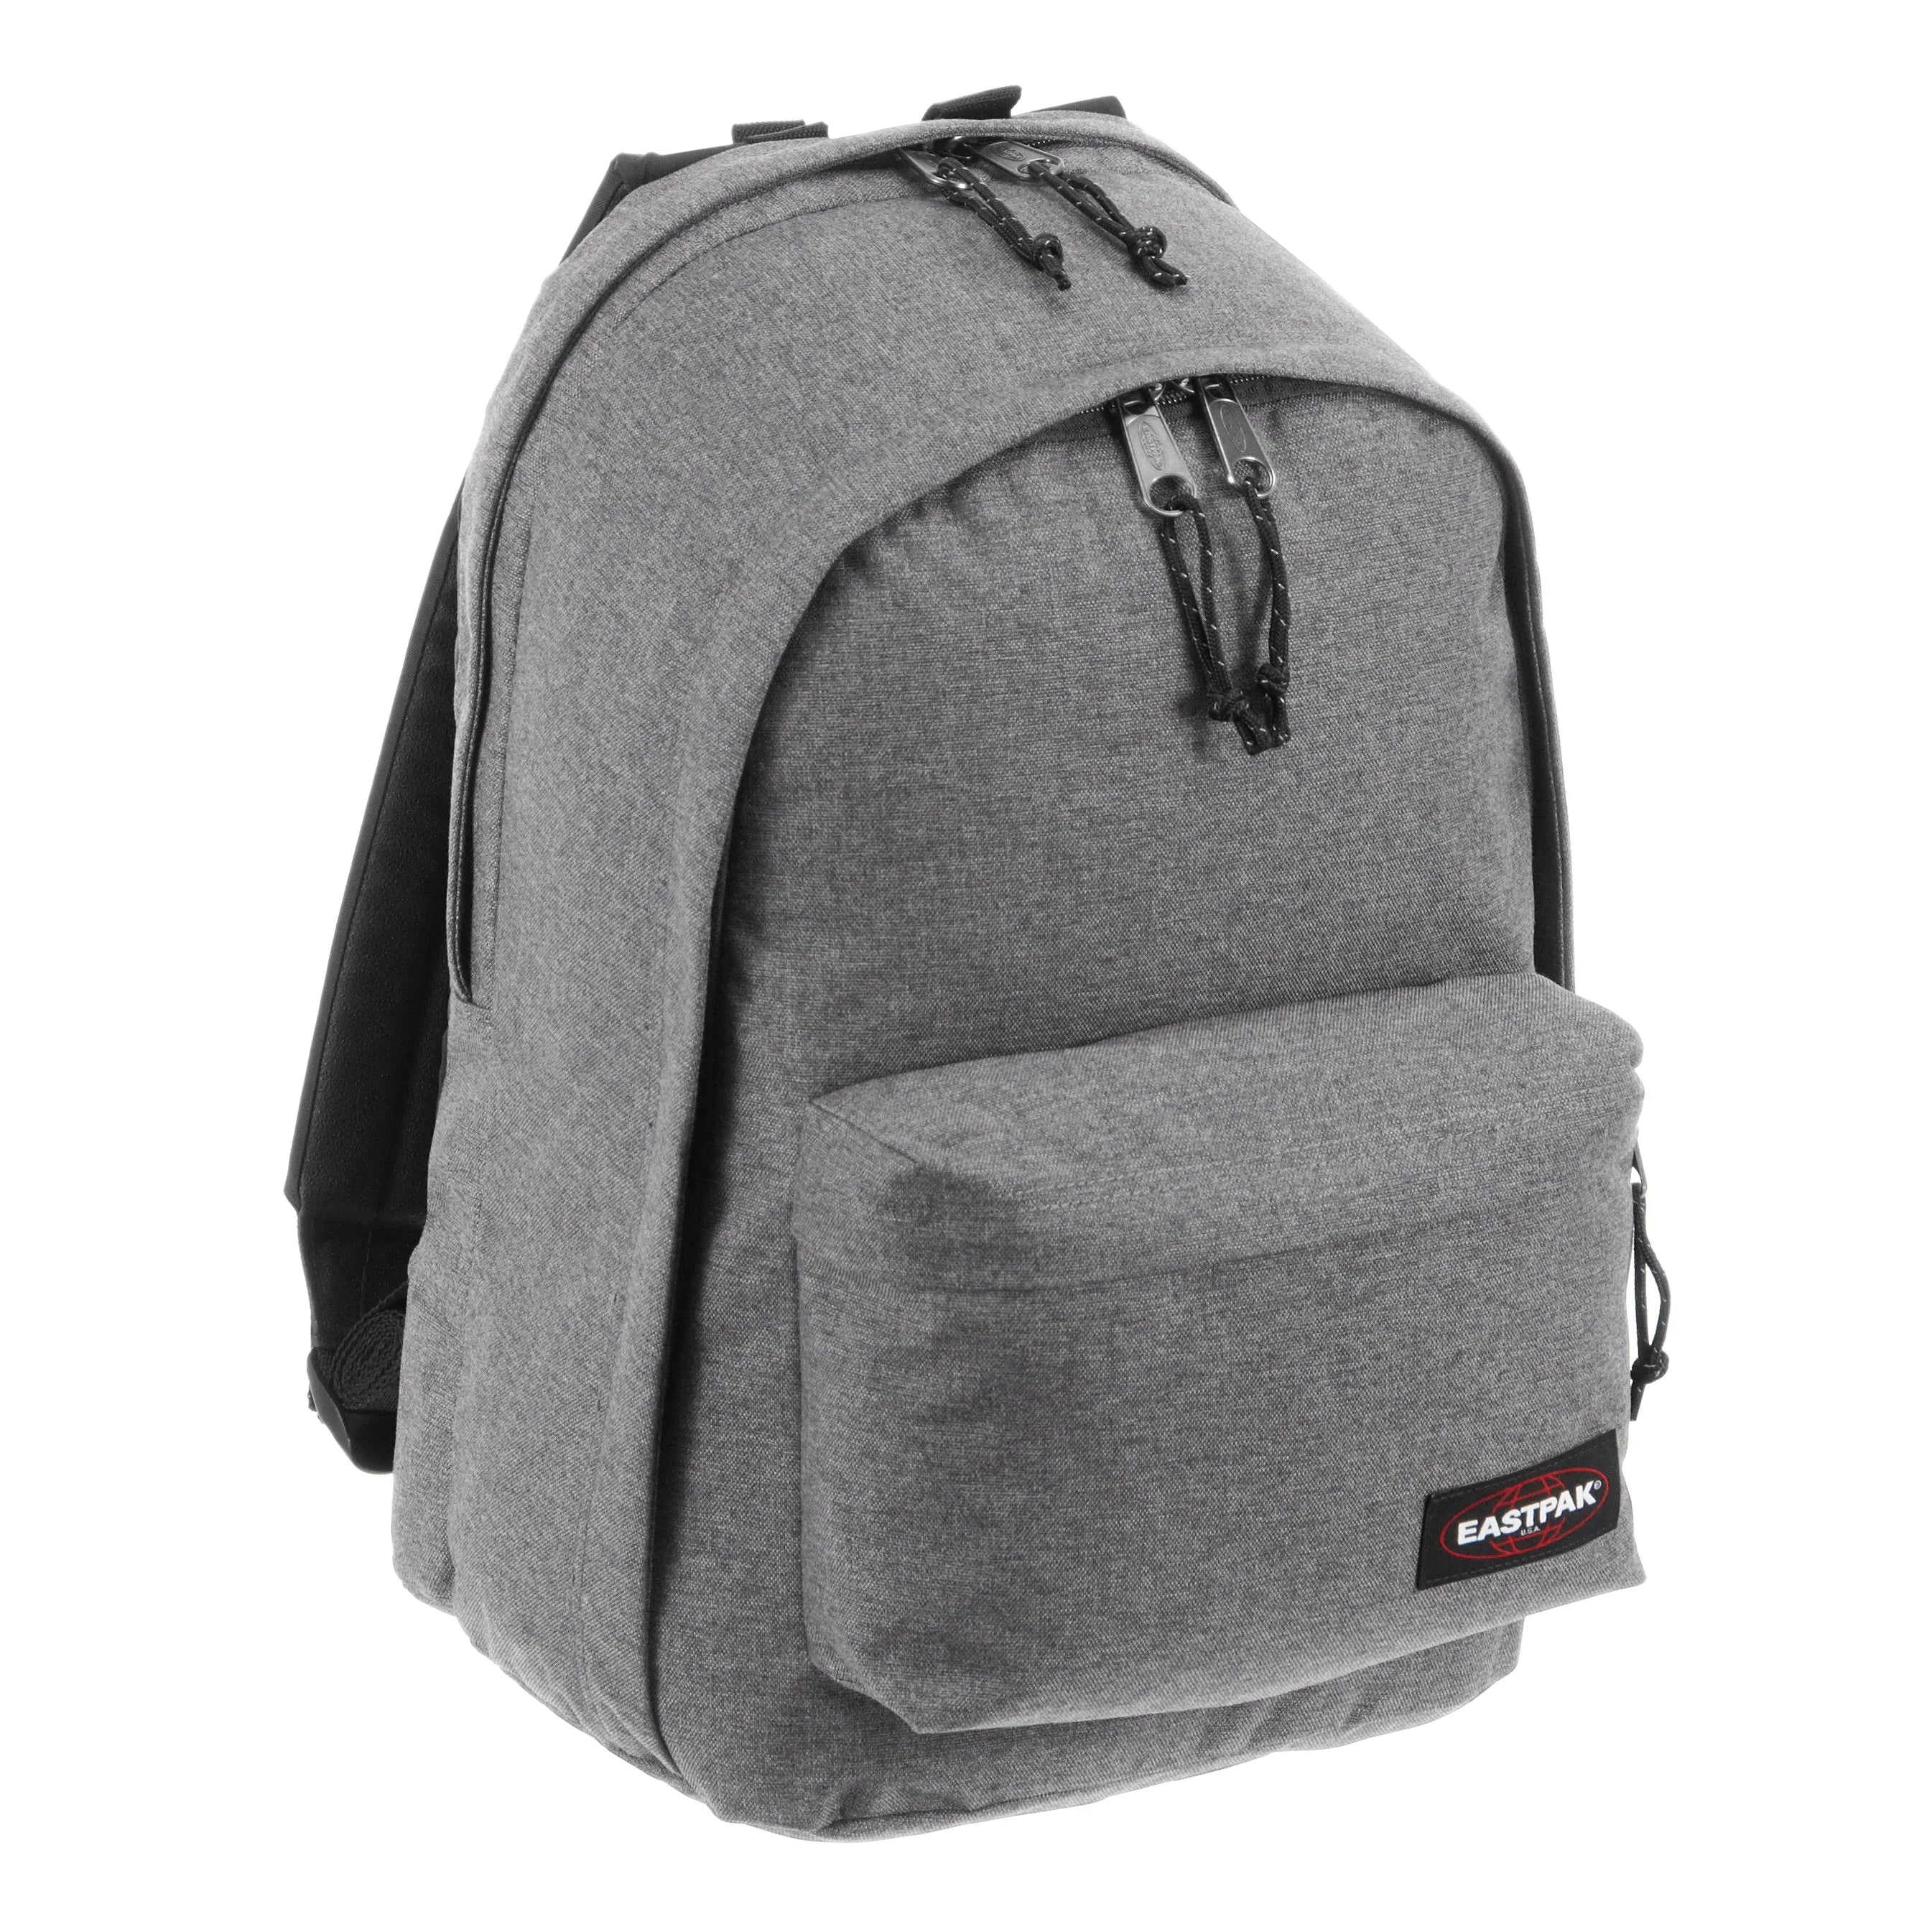 Eastpak Authentic Back to Work sac à dos avec compartiment pour ordinateur portable 43 cm - gris dimanche